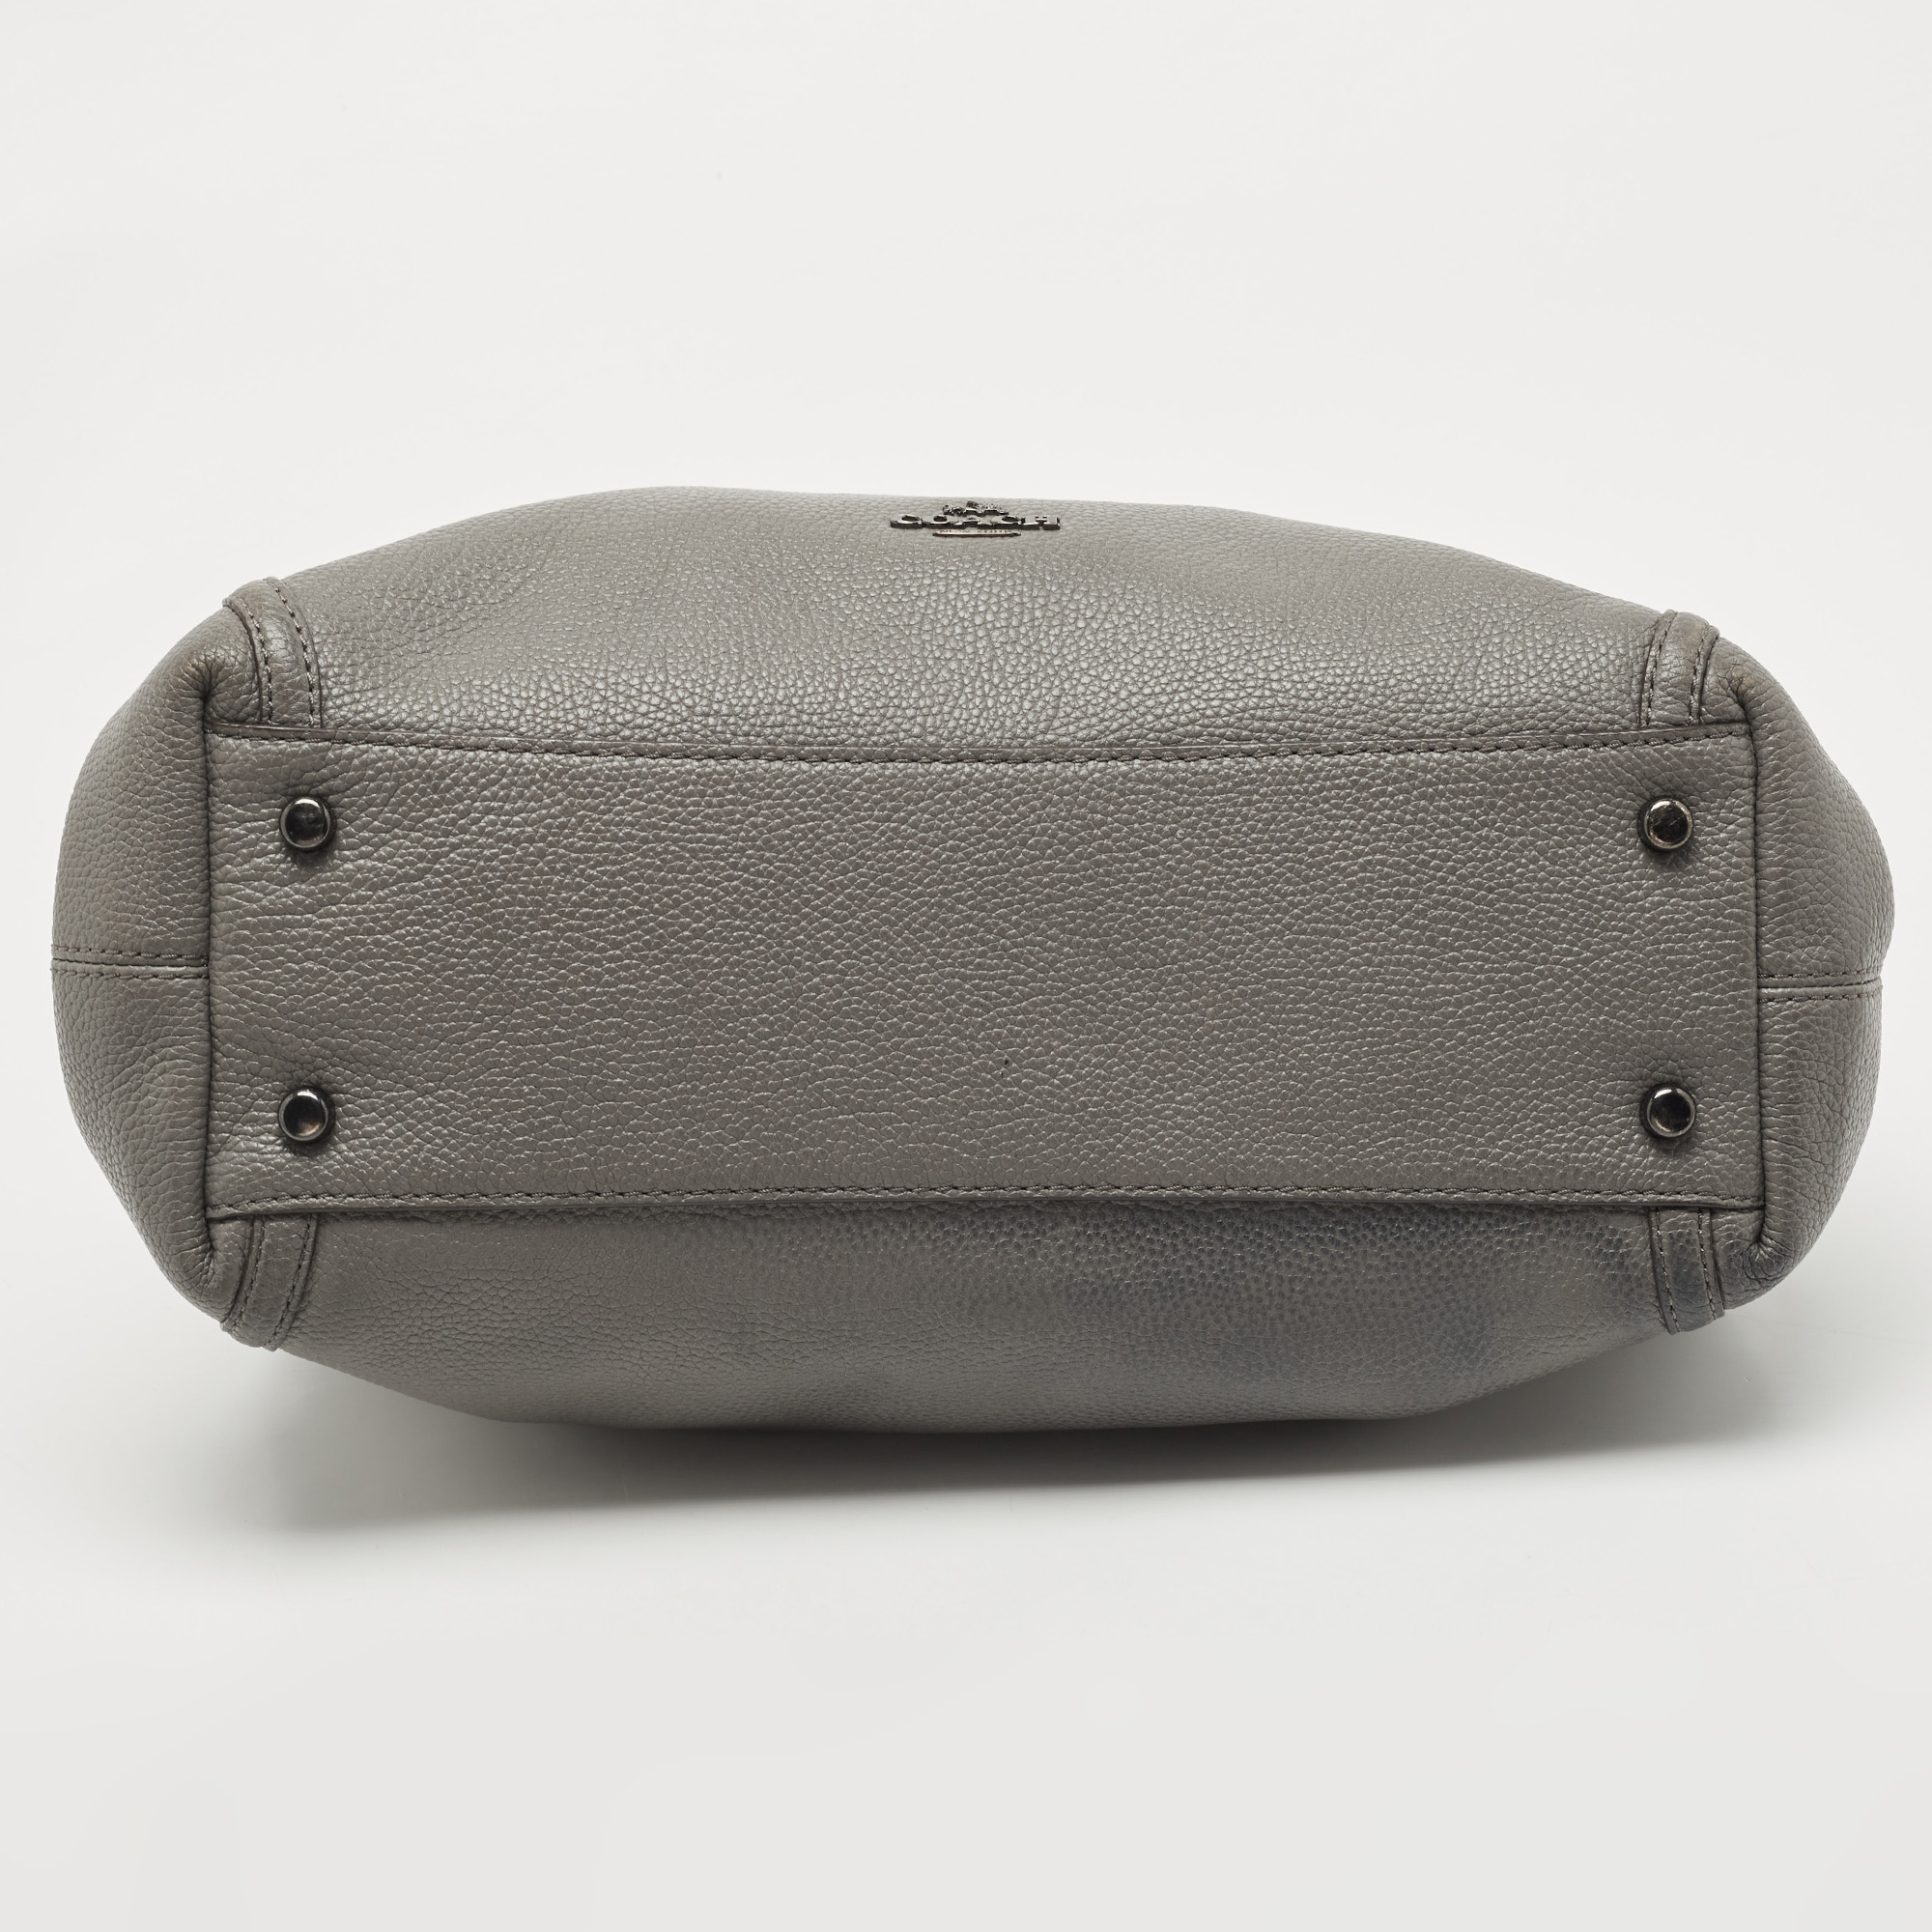 Coach Grey Leather Turnlock Edie Shoulder Bag